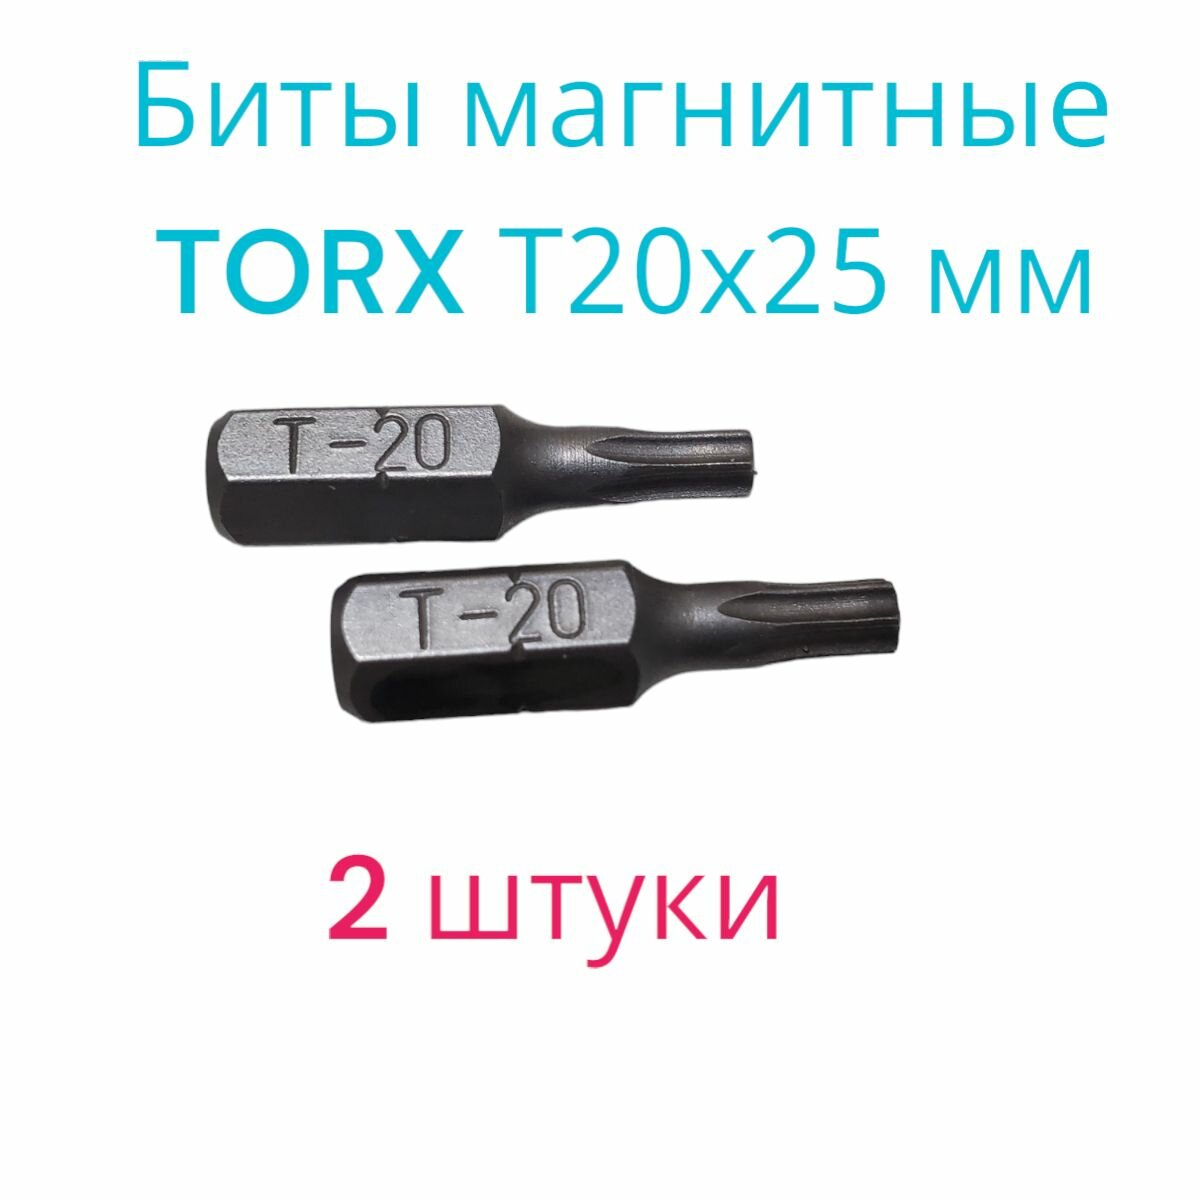 Биты магнитные TORX T20х25мм 2 штуки / биты для шуруповертов 25 мм